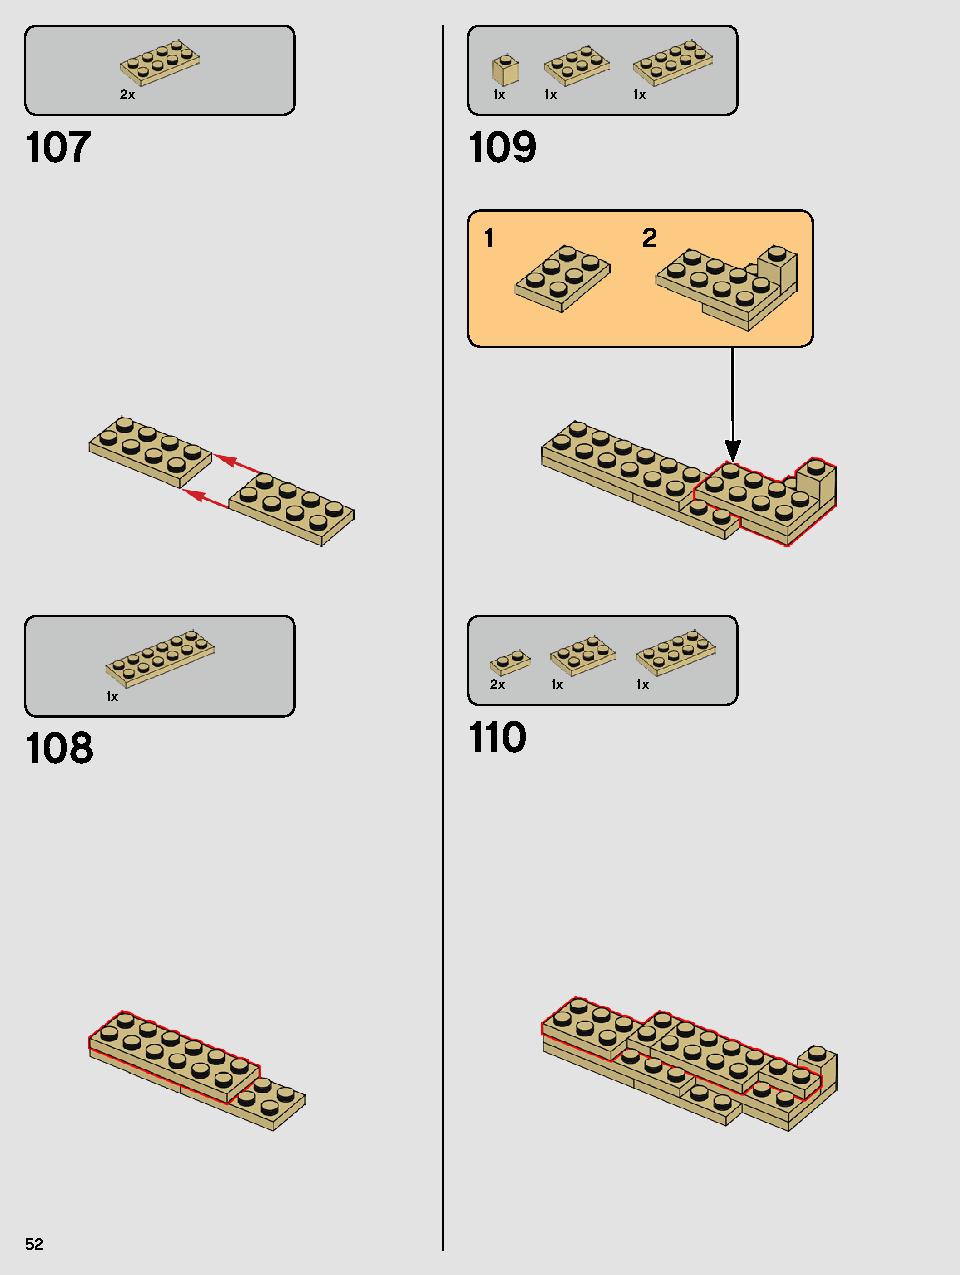 ヨーダ™ 75255 レゴの商品情報 レゴの説明書・組立方法 52 page